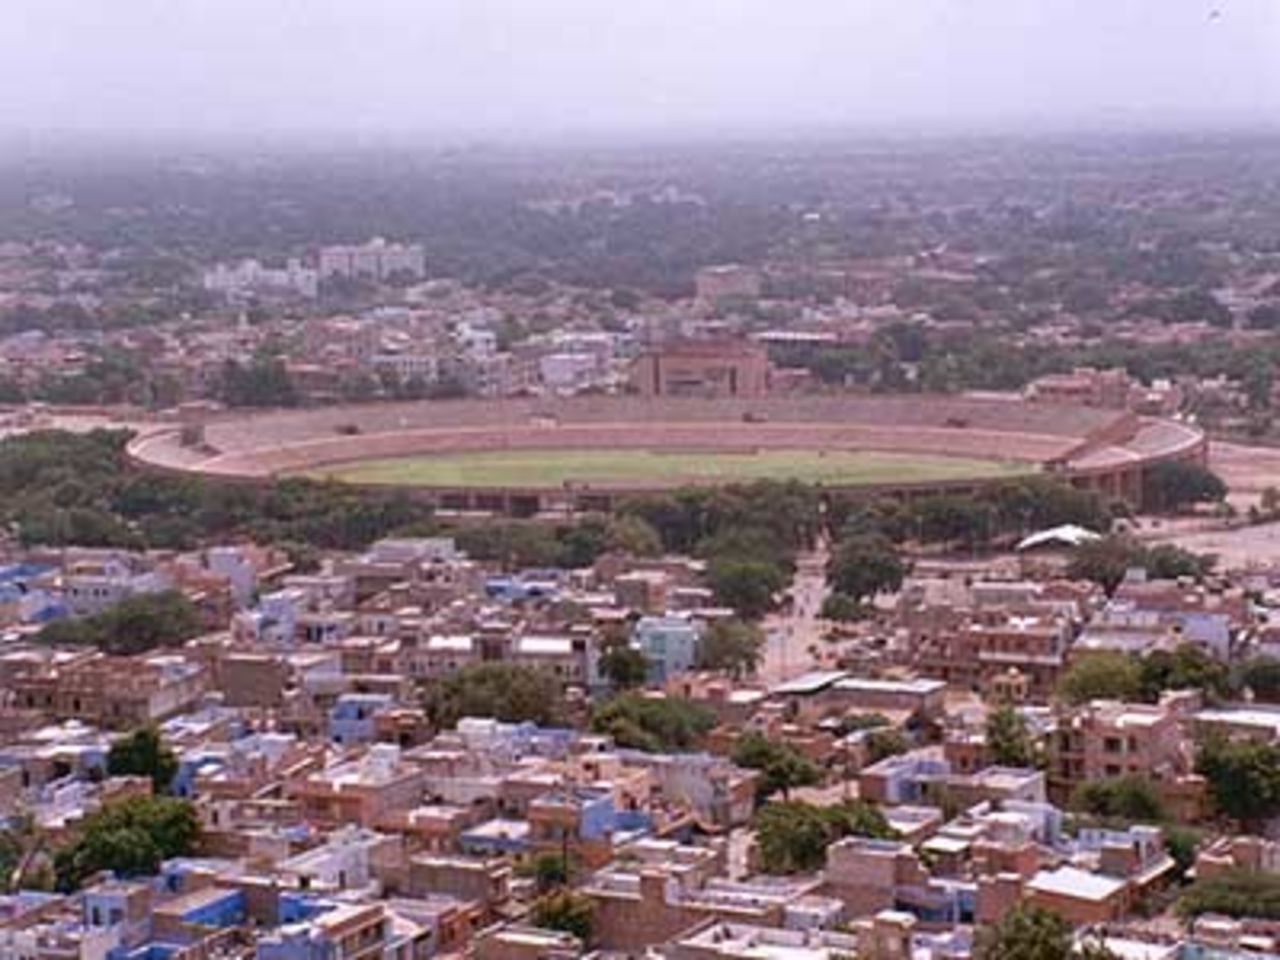 A panoramic view of stadium from Doordarshan & FM Tower, Jodhpur